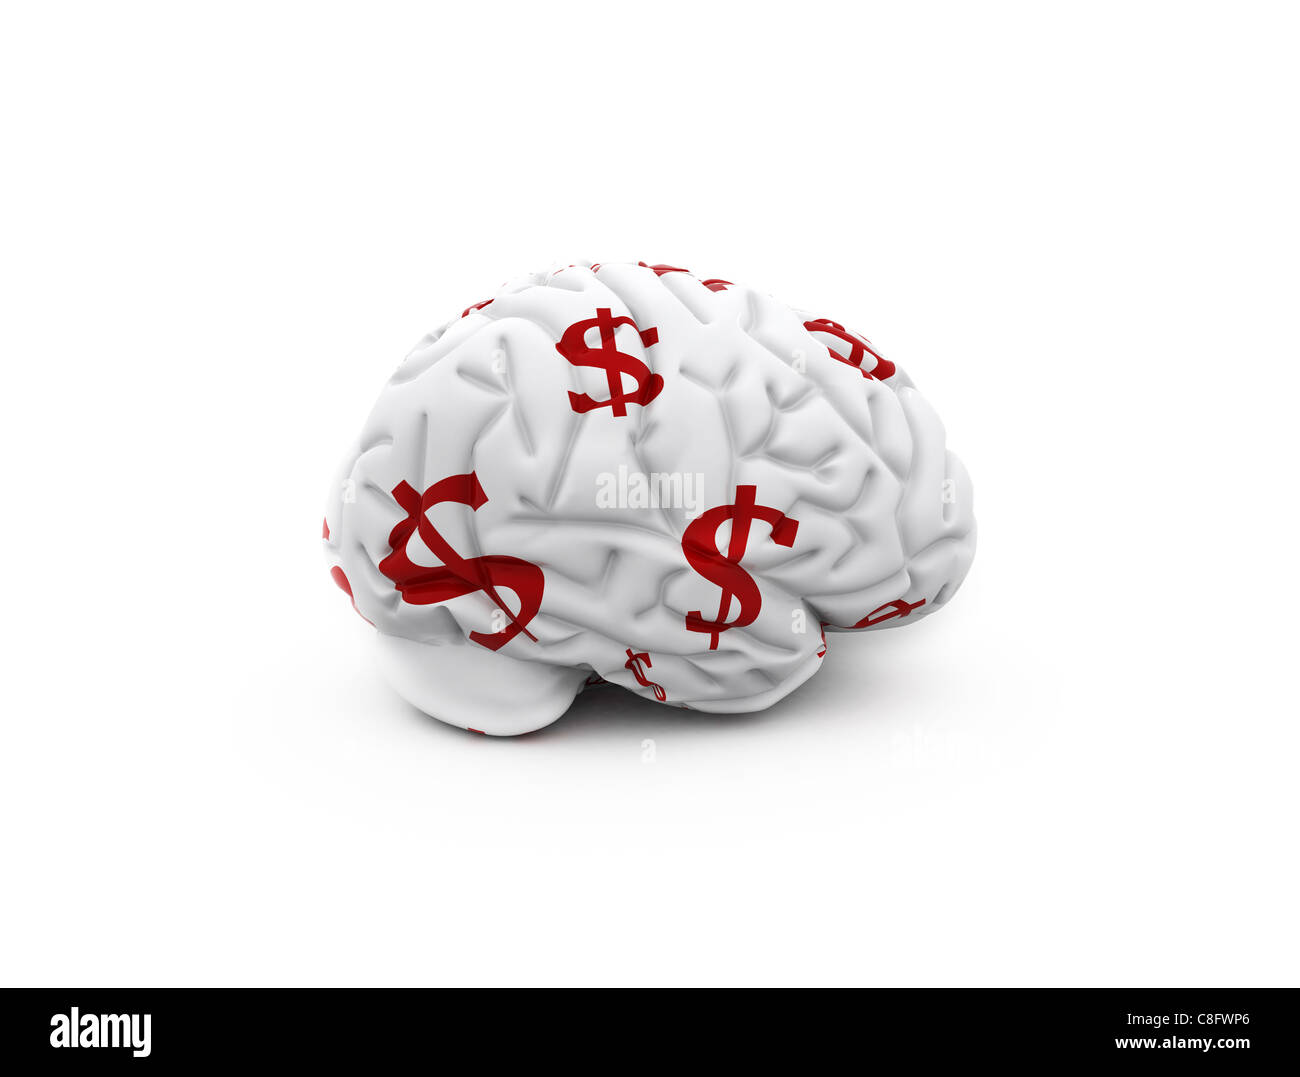 Gehirn mit Dollar-Zeichen - Geld auf den Geist Stockfoto